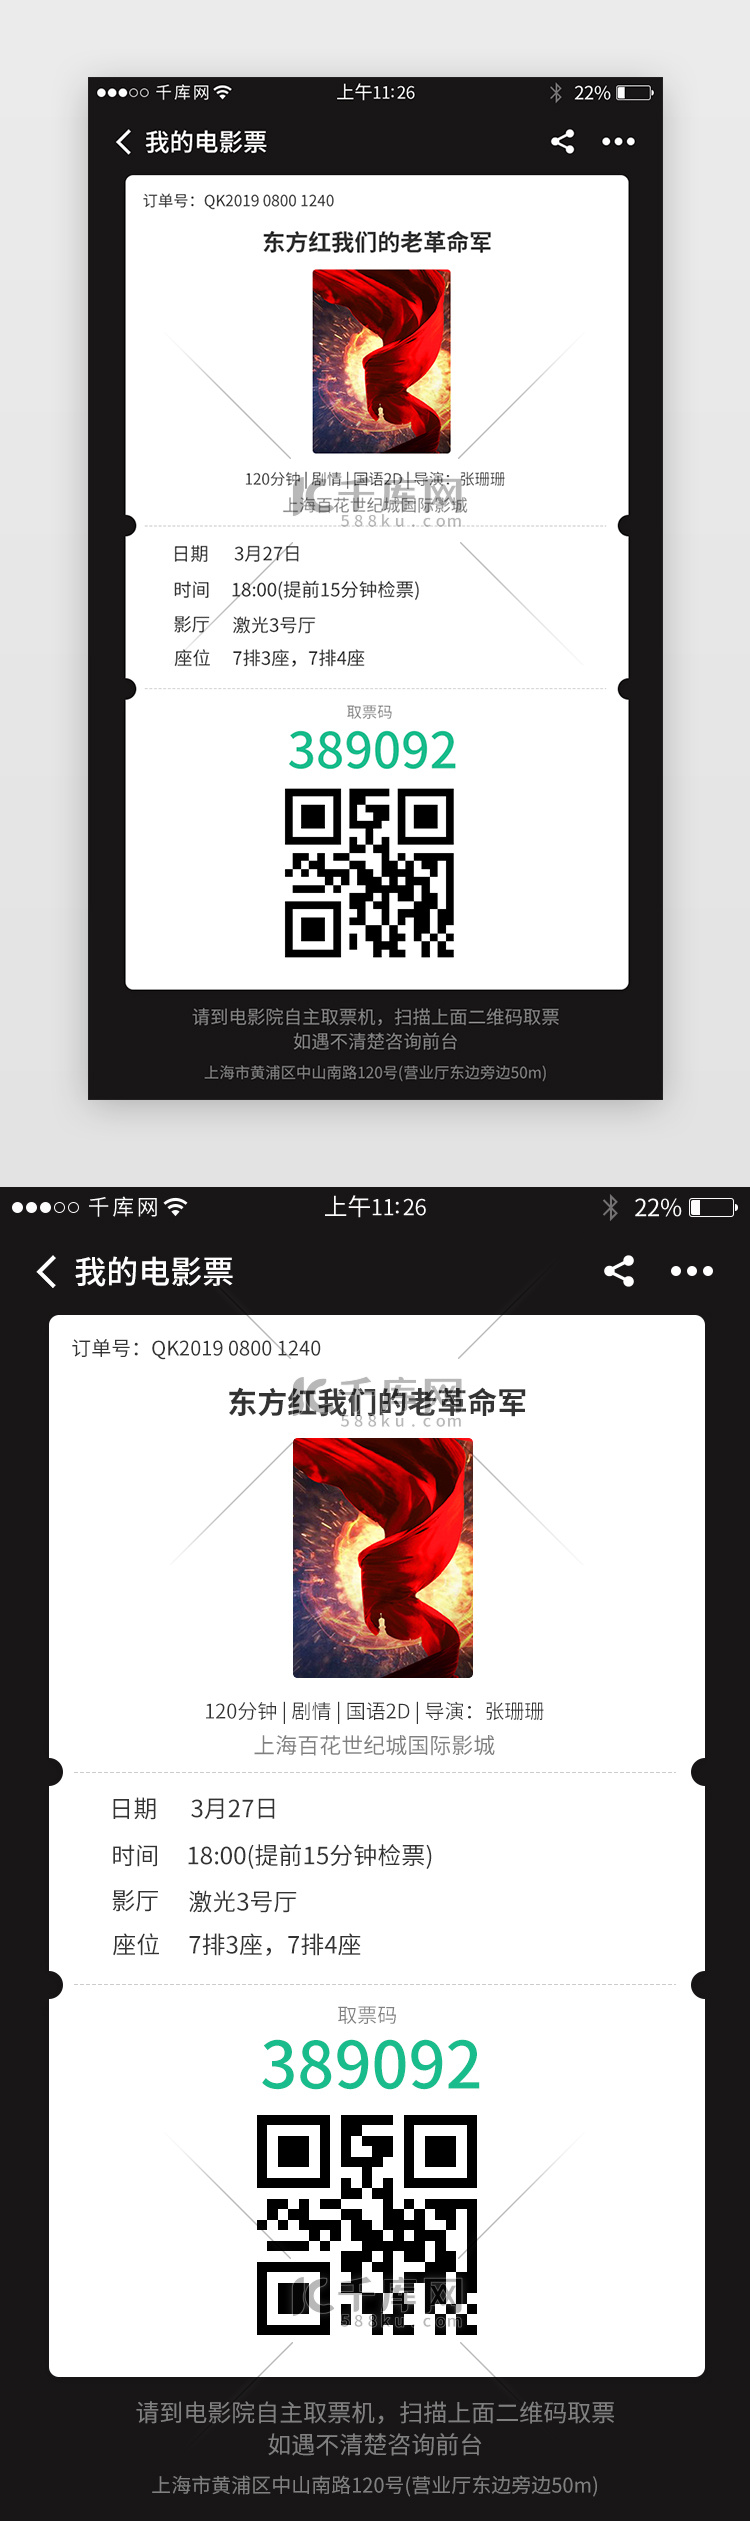 电影票务app界面设计